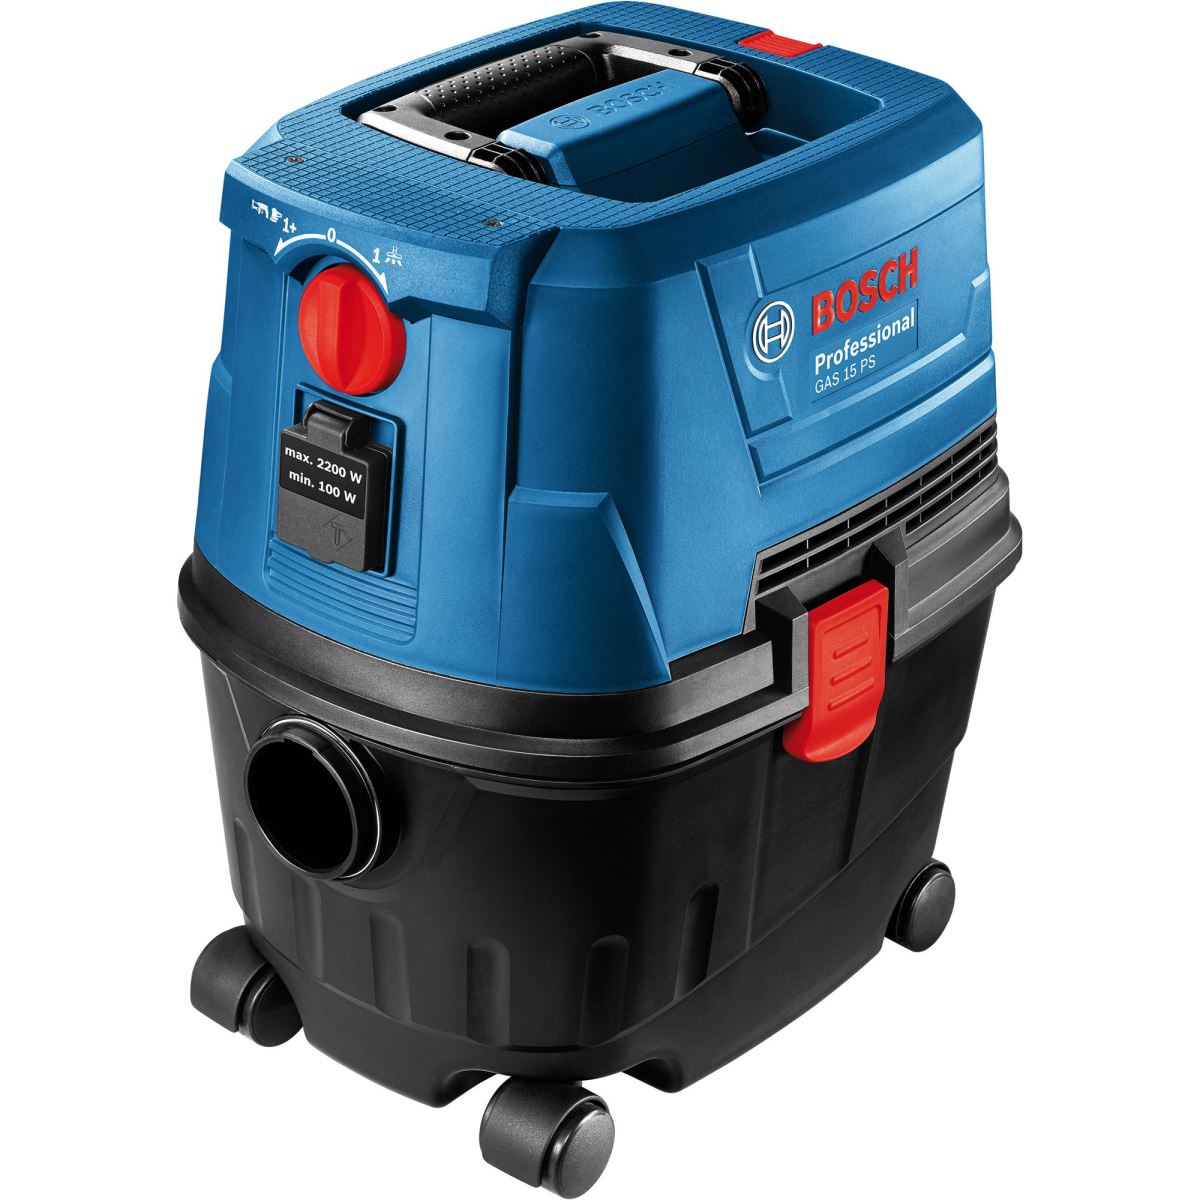 Aspirator universal Bosch Professional GAS 15 PS, 10 L, 1100 W, Negru/Albastru, 06019E5100